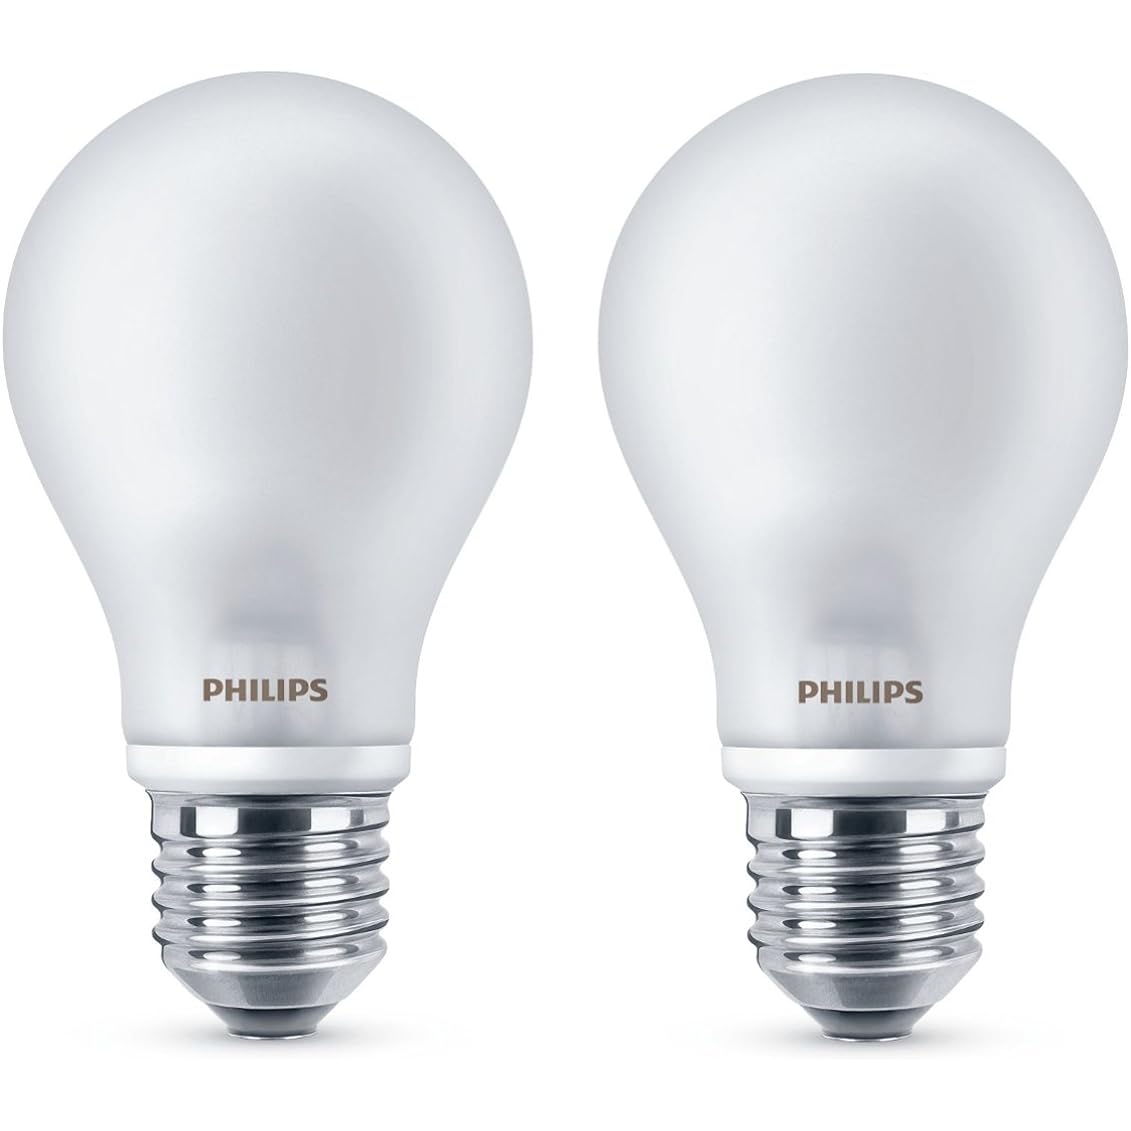 Лучшие светодиодные светильники в сравнении   Лучшие светодиодные светильники 2019 года   Все, что вы должны знать о нашем сравнении светодиодных ламп   В поисках хороших светодиодных ламп вы найдете производителя Philips